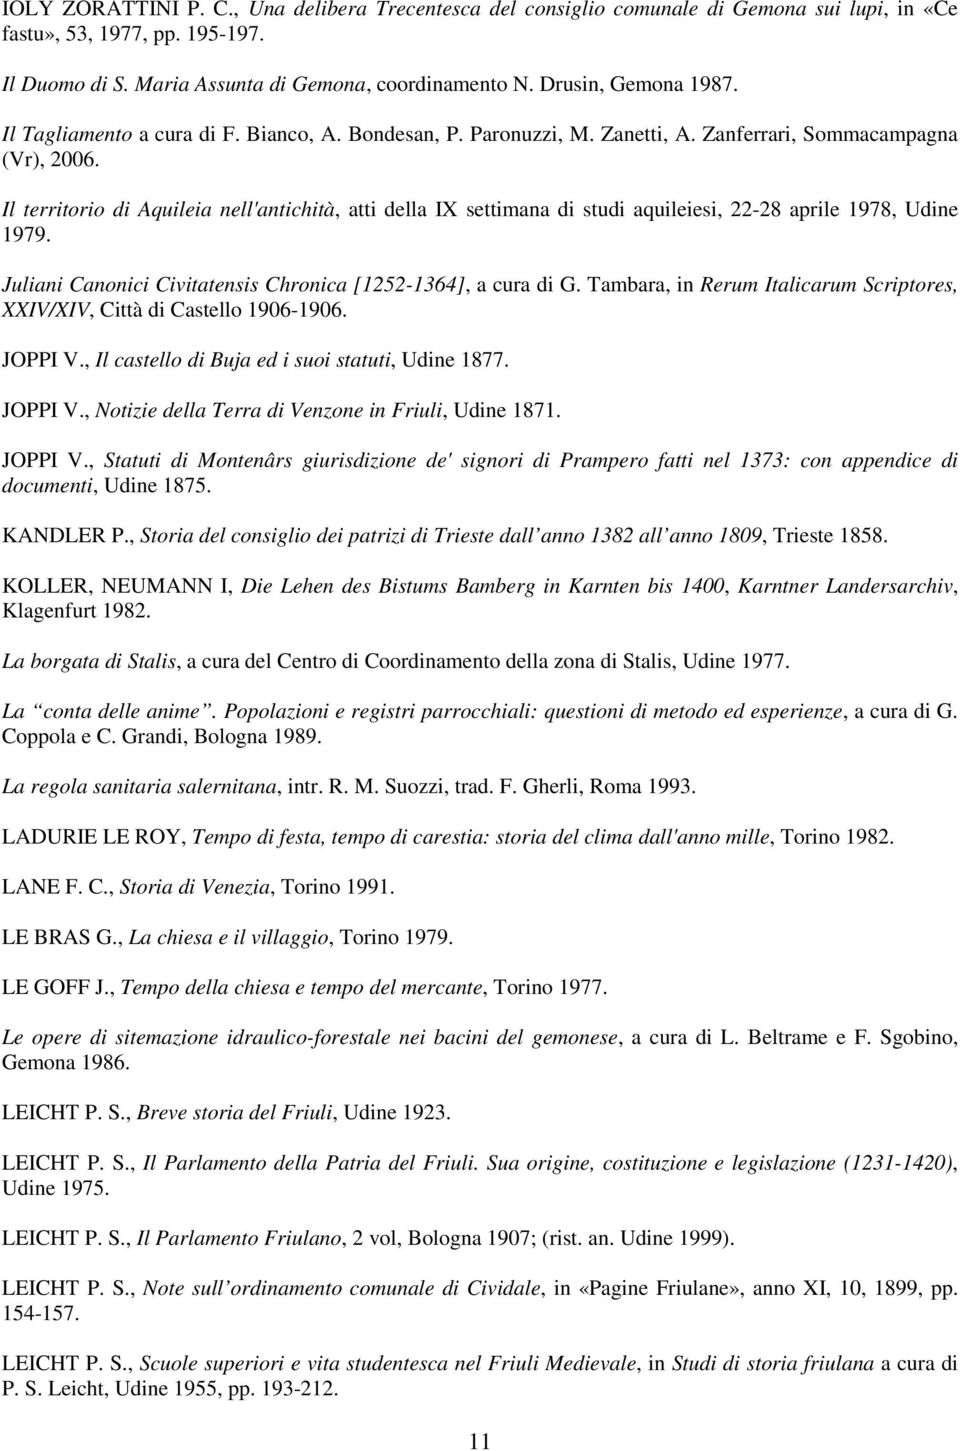 Il territorio di Aquileia nell'antichità, atti della IX settimana di studi aquileiesi, 22-28 aprile 1978, Udine 1979. Juliani Canonici Civitatensis Chronica [1252-1364], a cura di G.